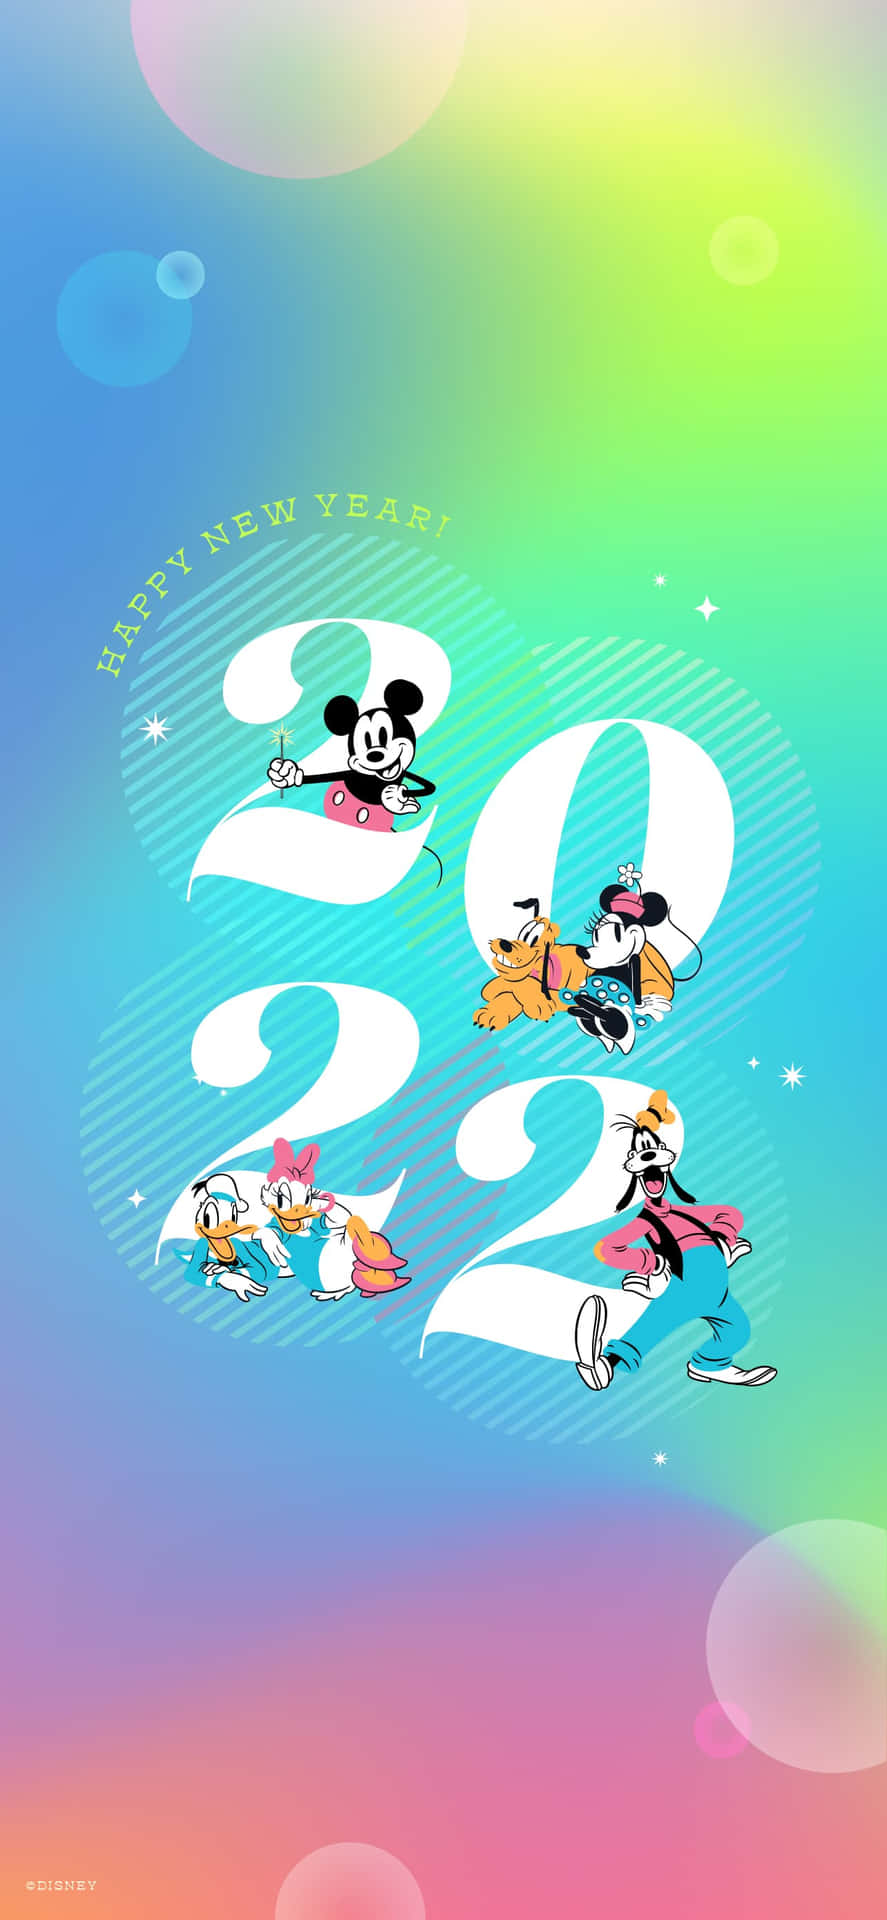 Hintergrundmit Mickey-maus-charakteren 2022